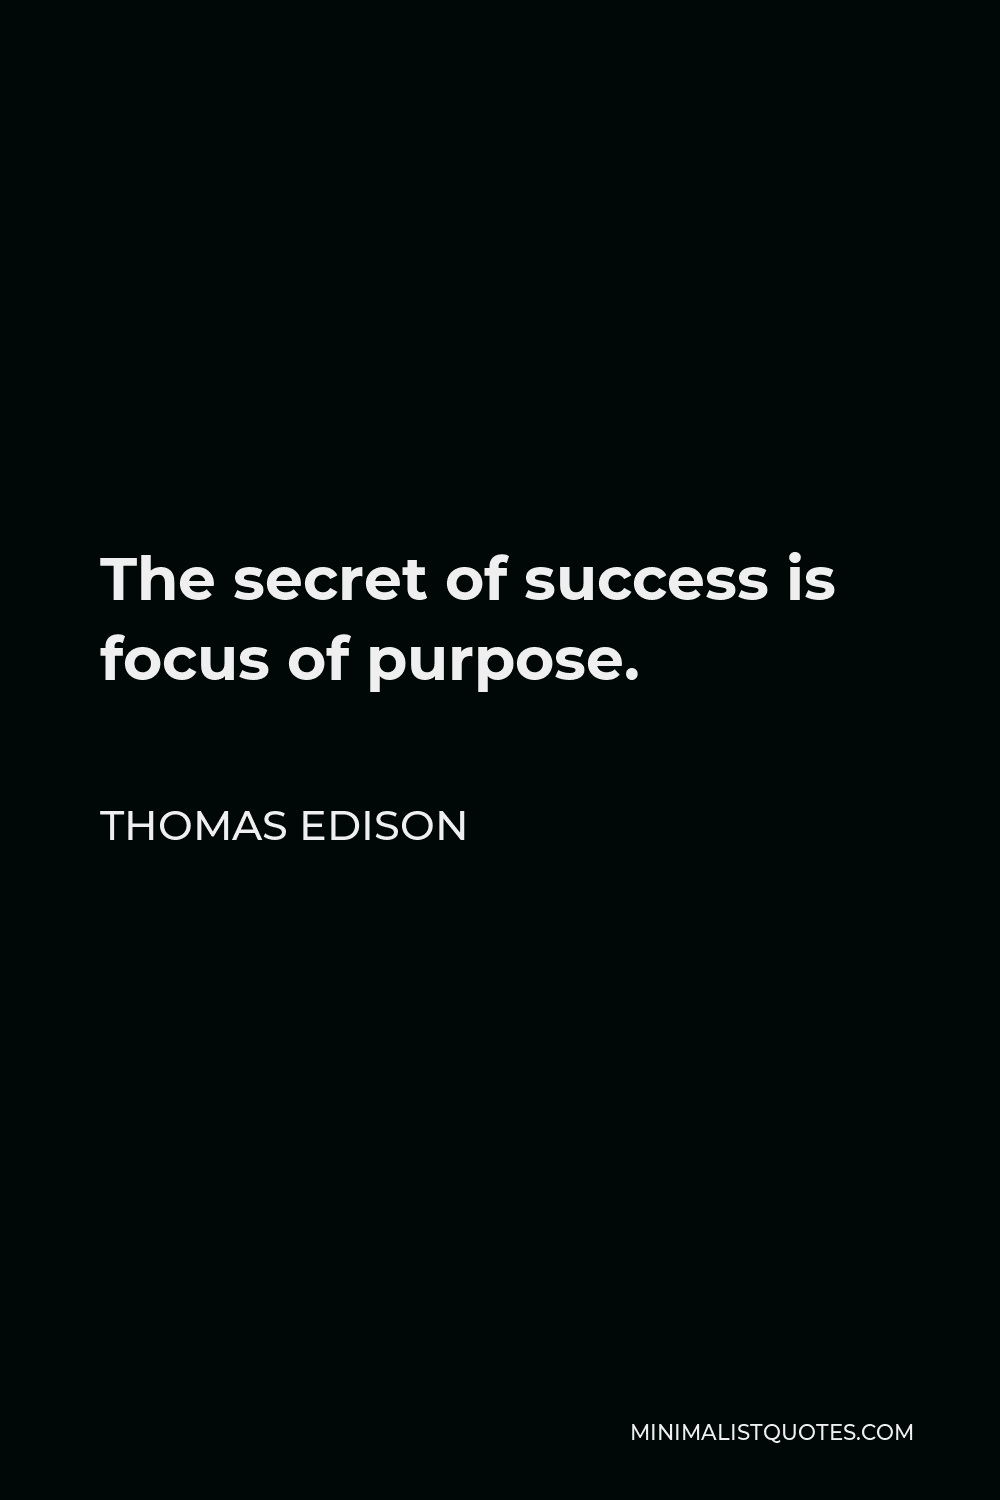 Thomas Edison Quote - The secret of success is focus of purpose.